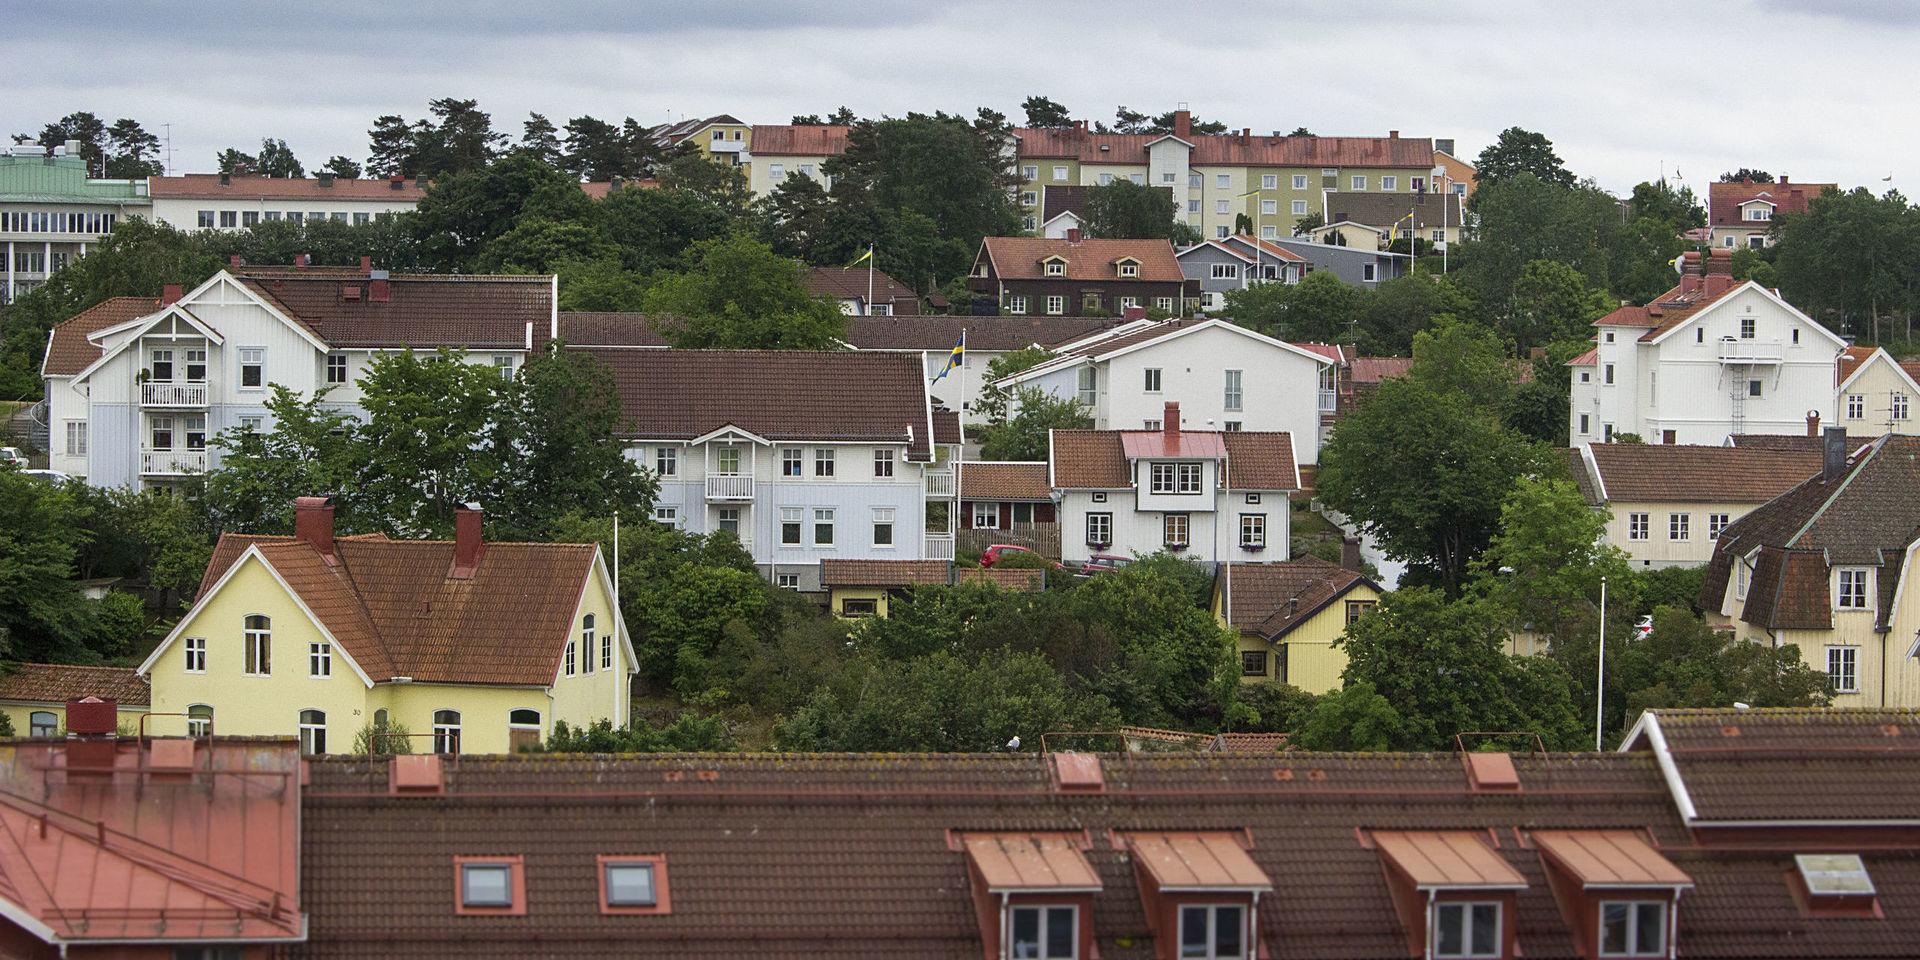 Under perioden juni-augusti såldes 66 bostadsrätter i Strömstads kommun - en hög siffra jämfört med de senaste åren.